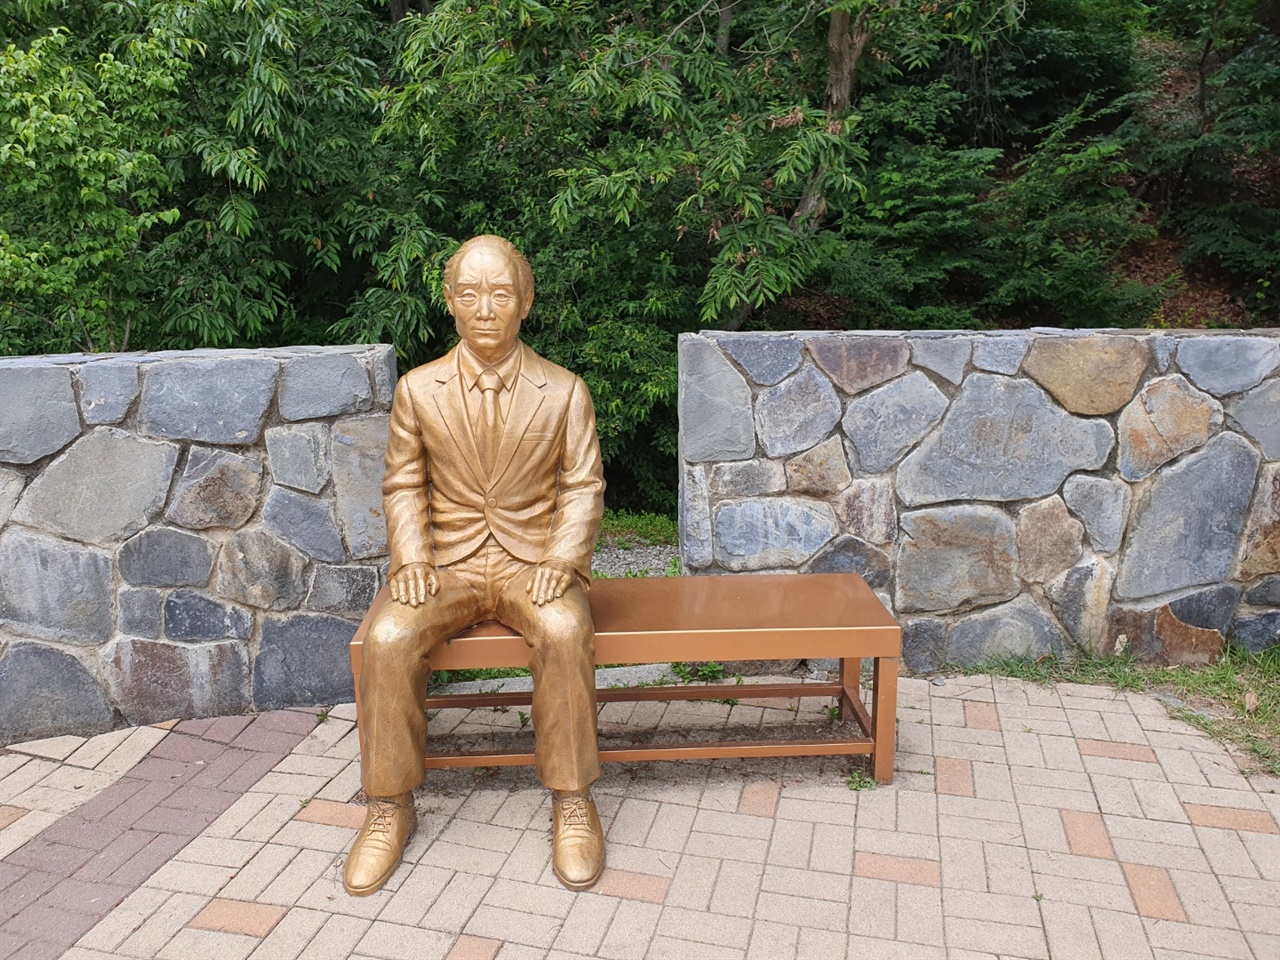 박두진 문학길 초입에 있는 청록파 시인 박두진의 동상이다. 우리에게 <해>란 시로 잘 알려진 시인 박두진은 유년기 대부분을 안성에서 보냈다. 말년의 집필실터와 그의 묘도 근방에 자리하고 있다.